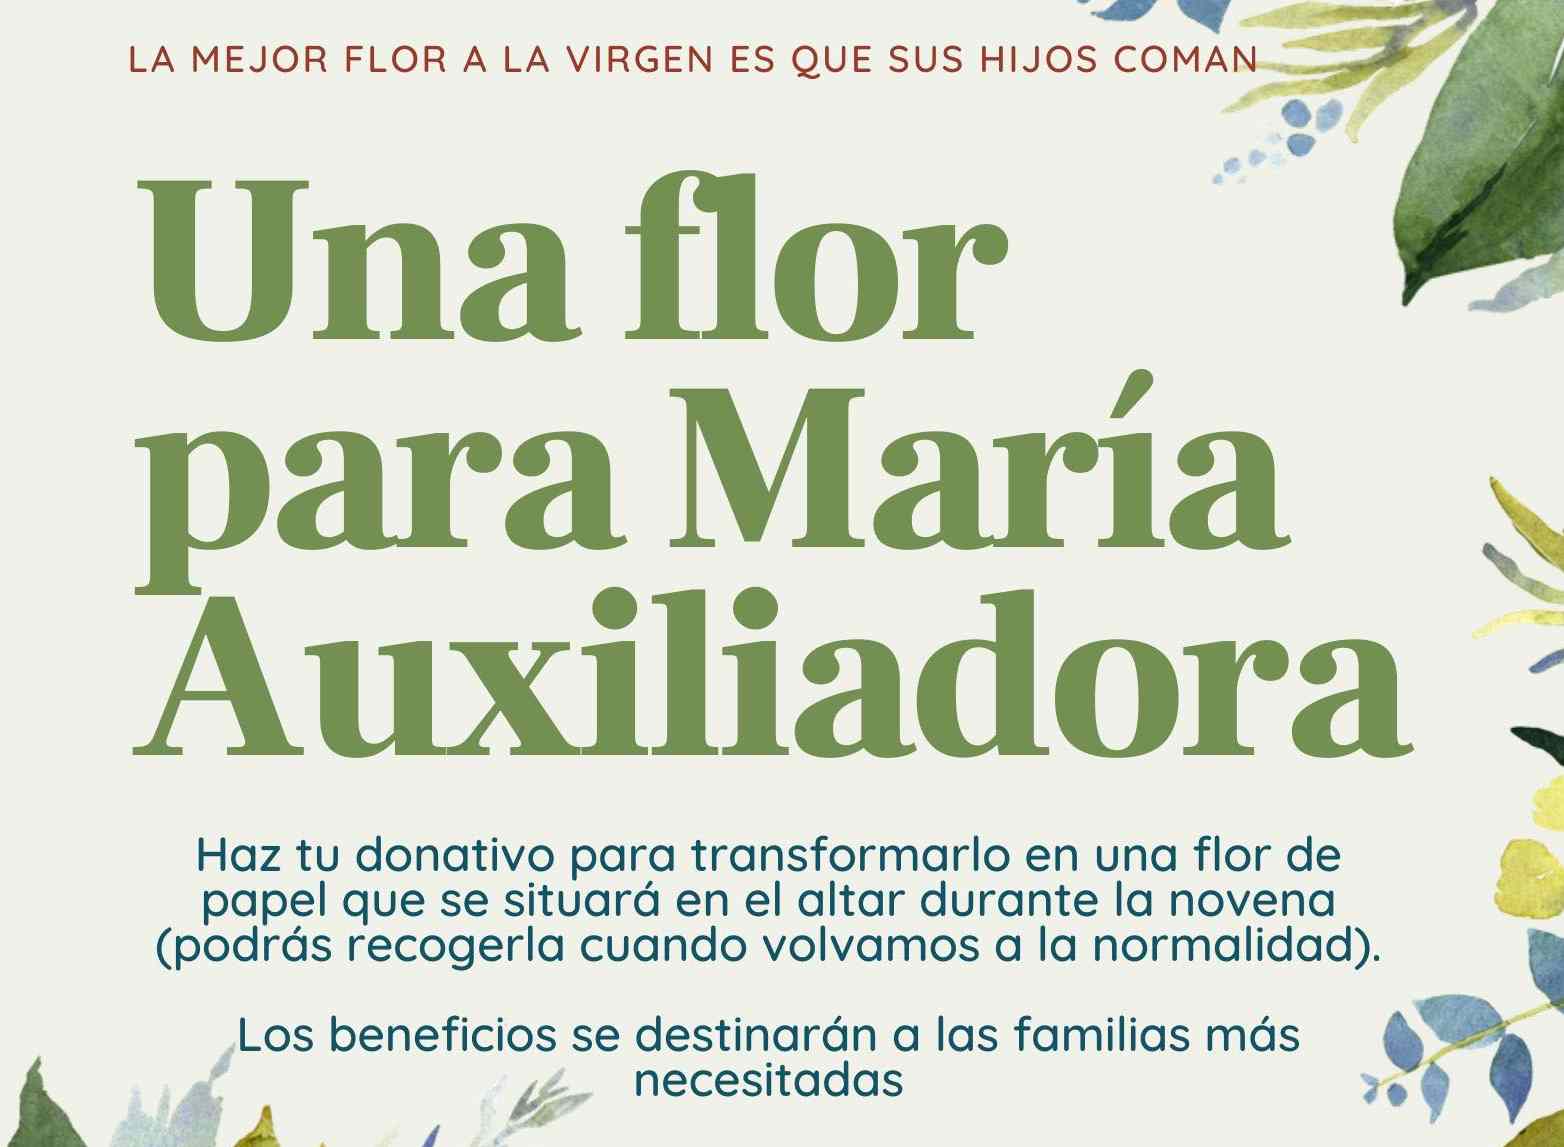 ‘Una flor para María Auxiliadora’, una iniciativa solidaria a beneficio de las familias más necesitadas de Utrera